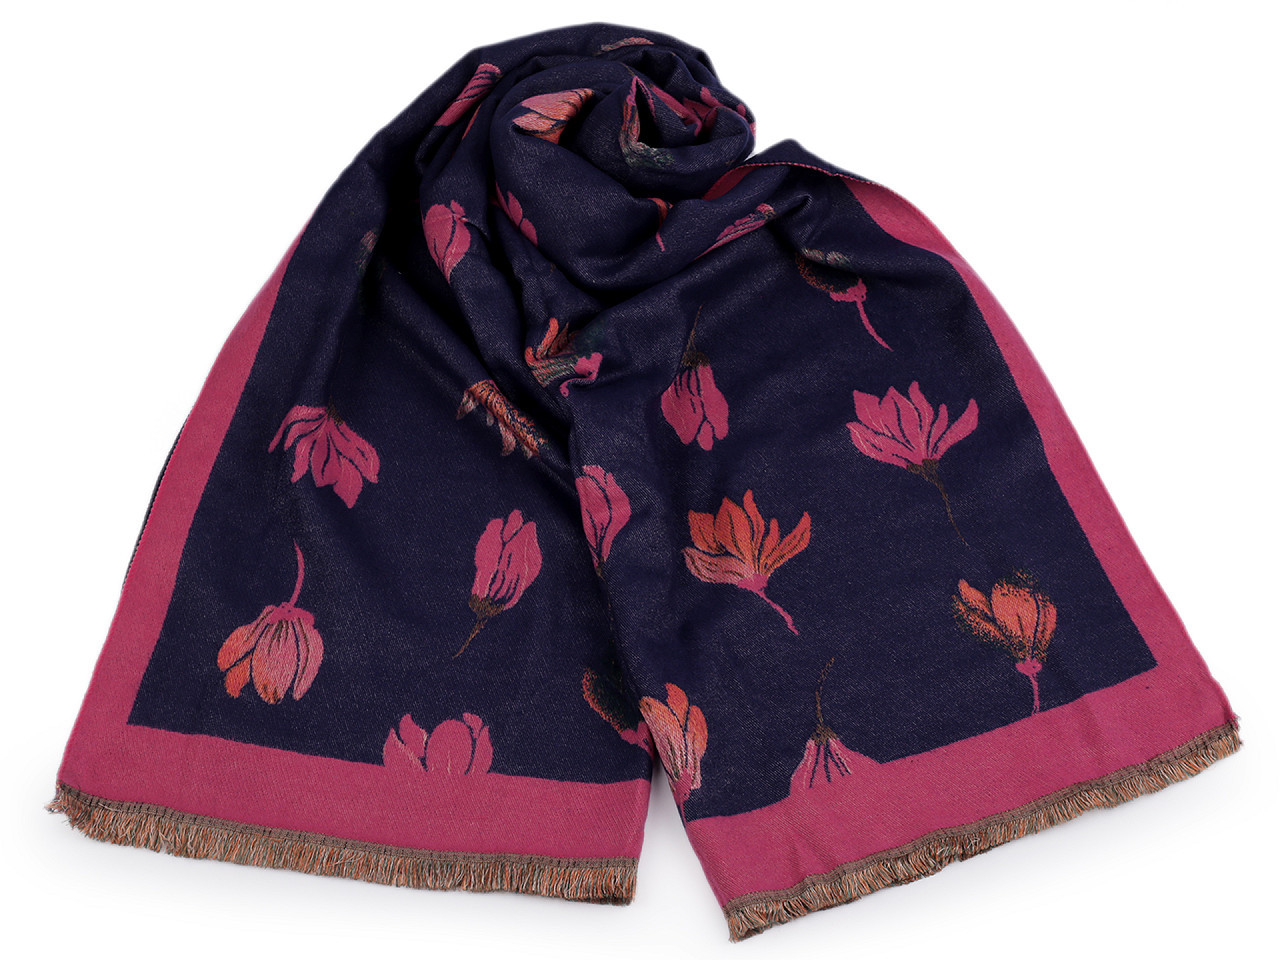 Šátek / šála typu kašmír s třásněmi, květy 65x190 cm, barva 15 pink modrá tmavá